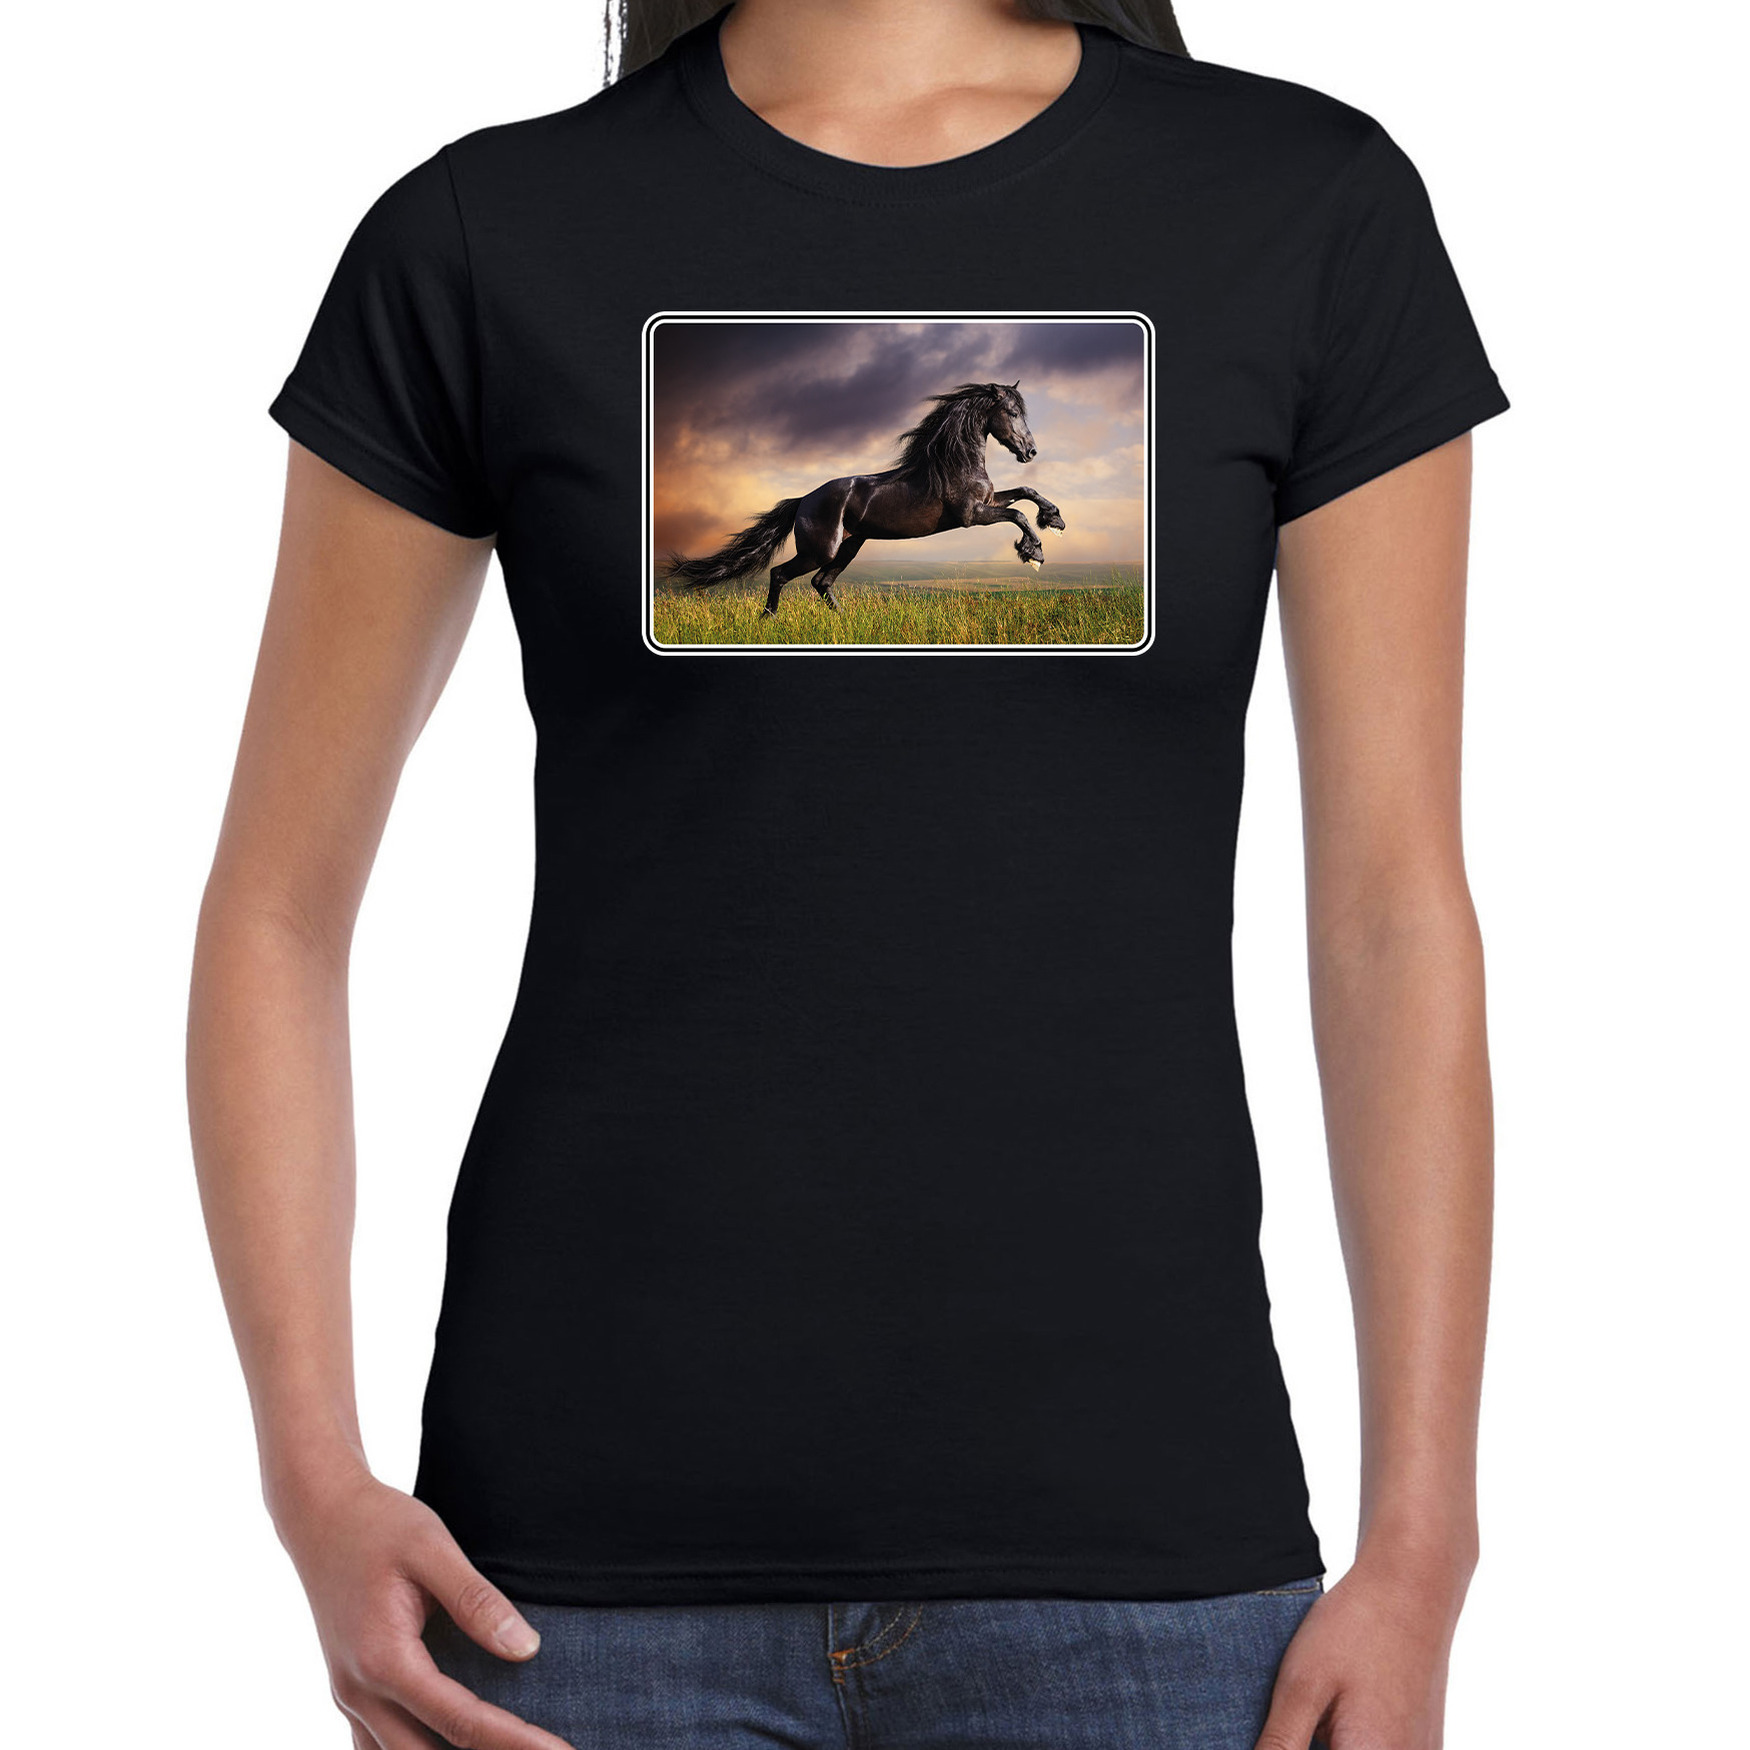 Dieren t-shirt met paarden foto zwart voor dames